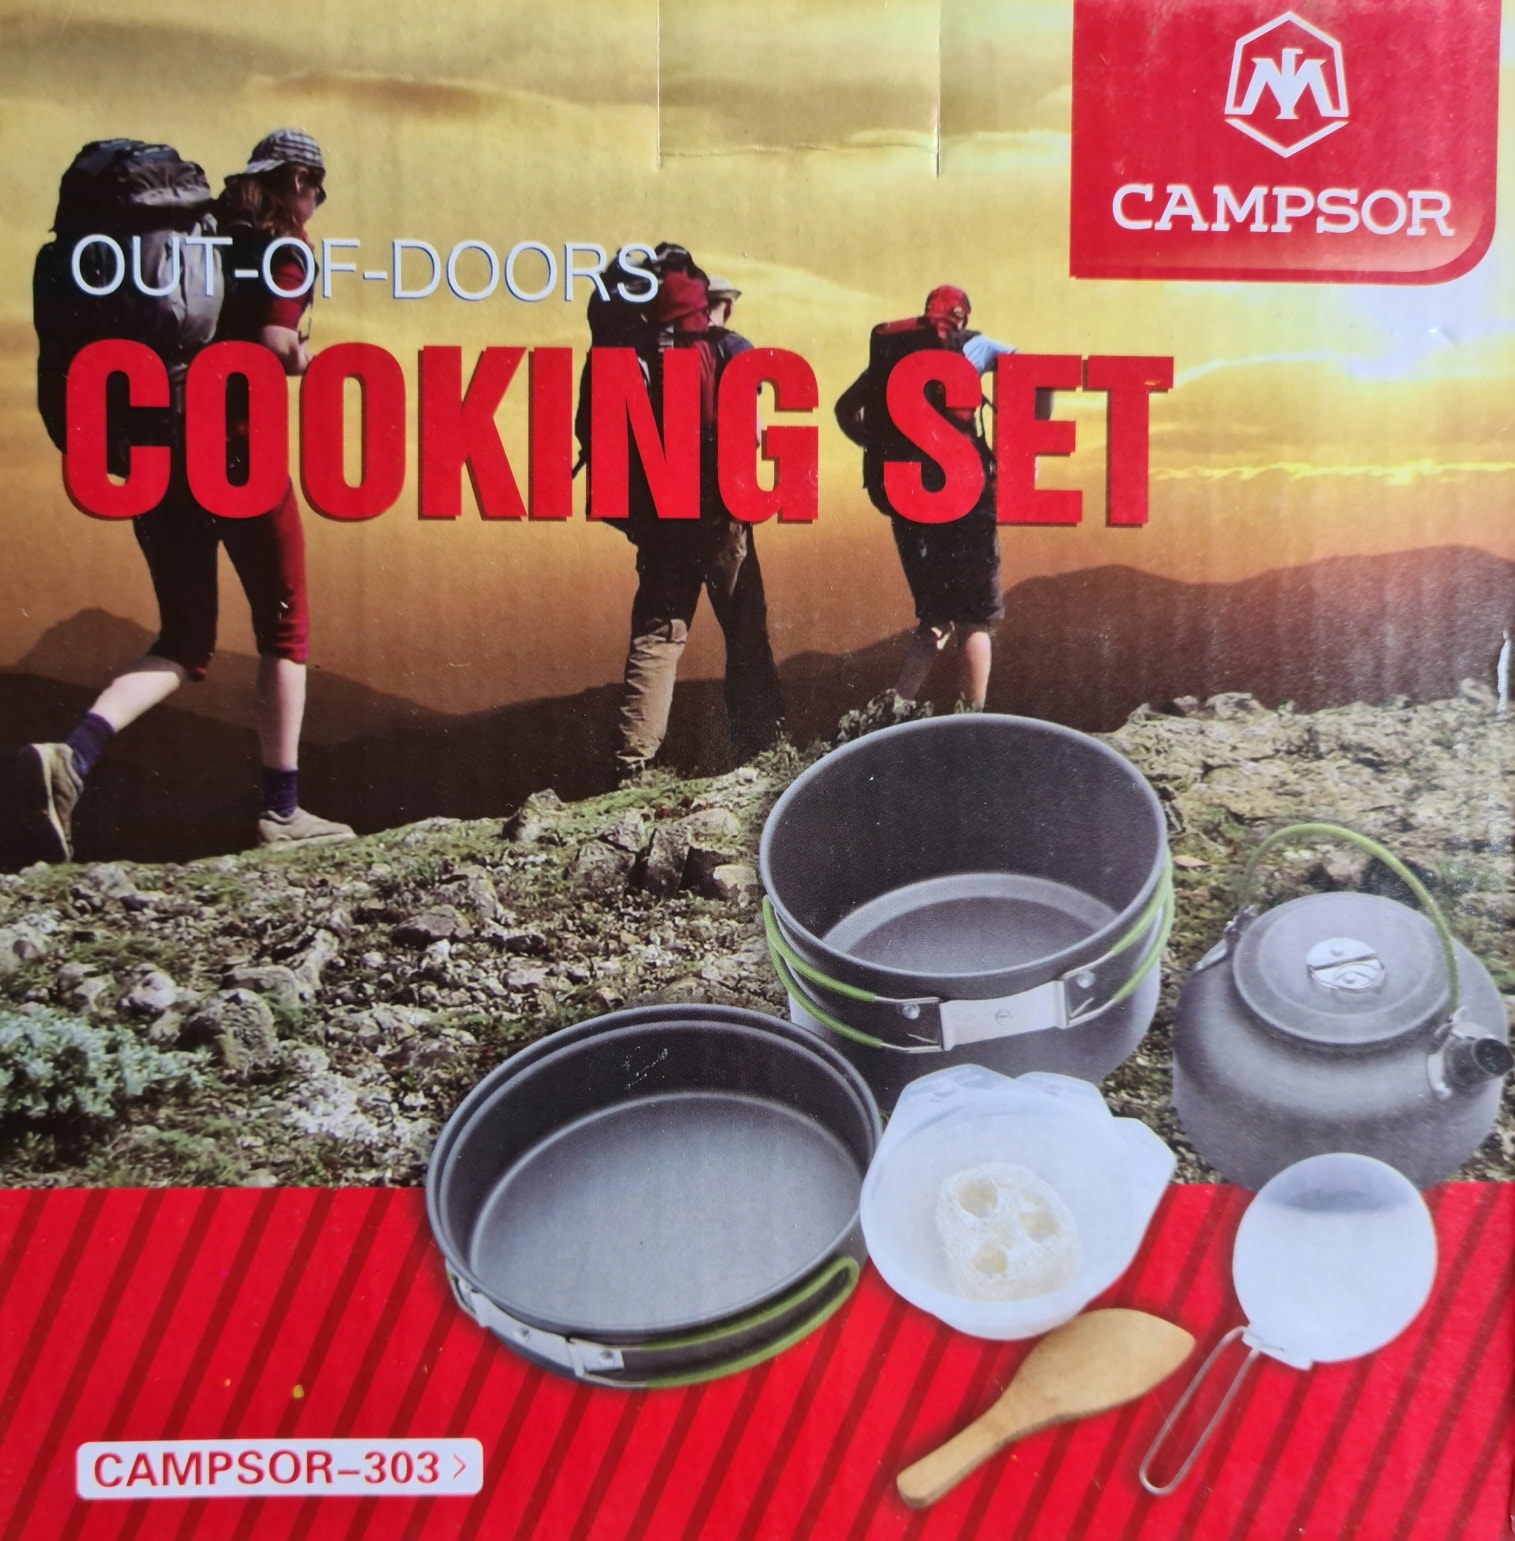 Cooking set